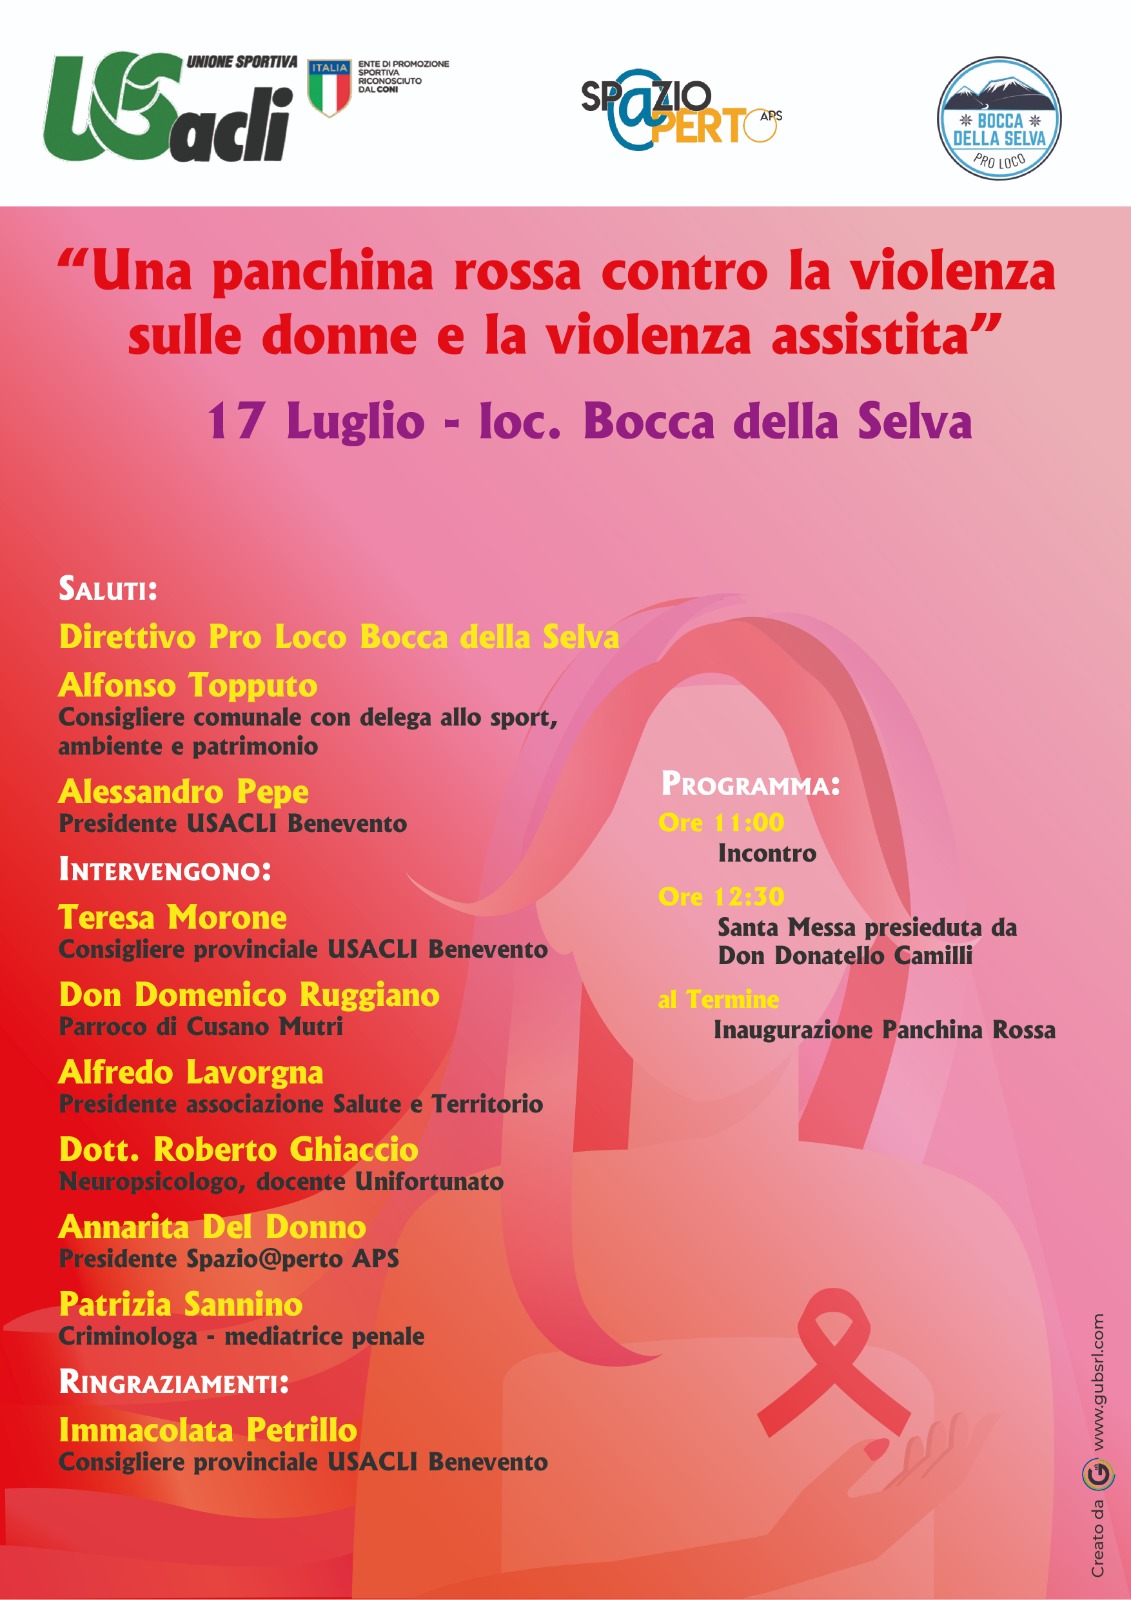 Panchina rossa antiviolenza: domenica 17 luglio inaugurazione a Bocca Della Selva